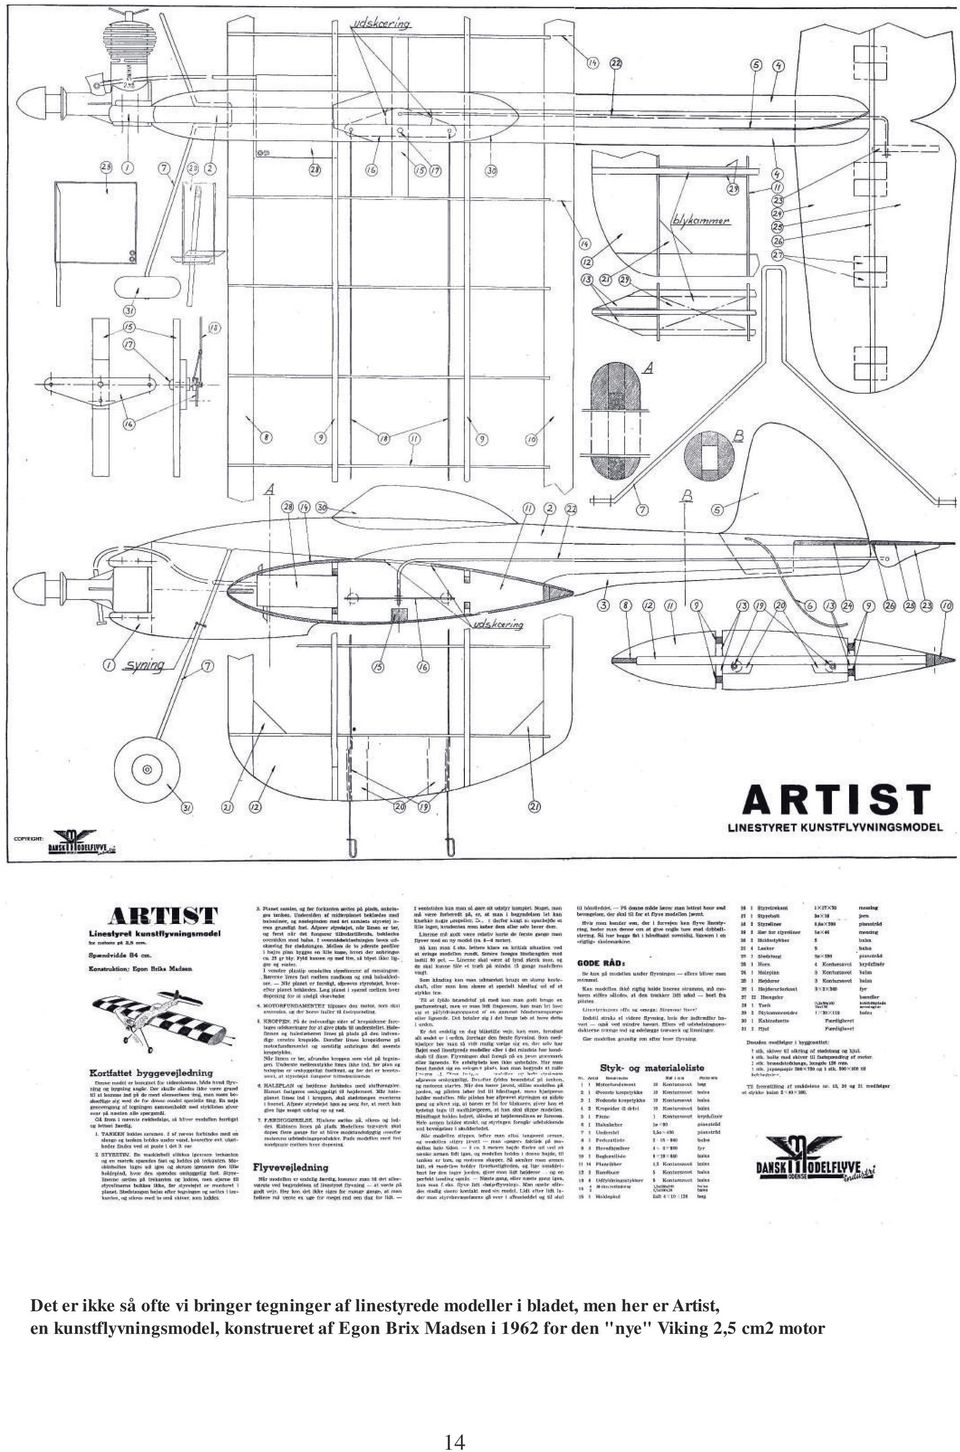 Artist, en kunstflyvningsmodel, konstrueret af